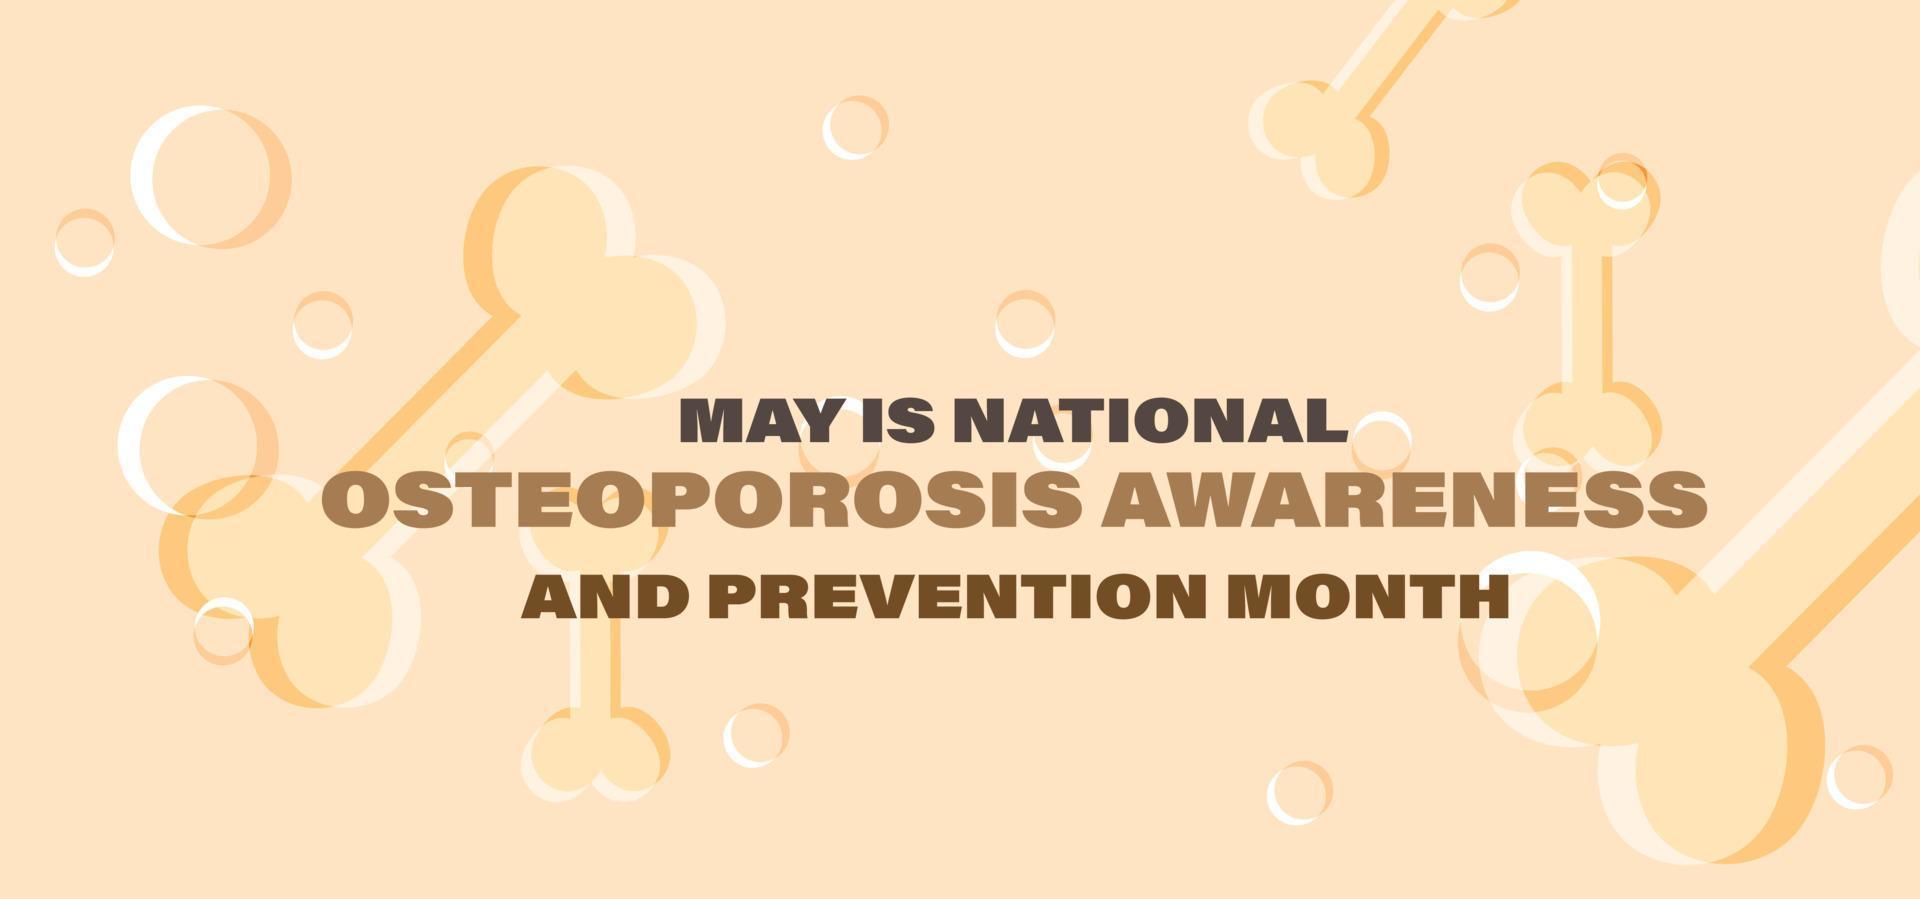 mayo es nacional osteoporosis conciencia y prevención mes. modelo fondo, bandera, tarjeta, póster. vector ilustración.